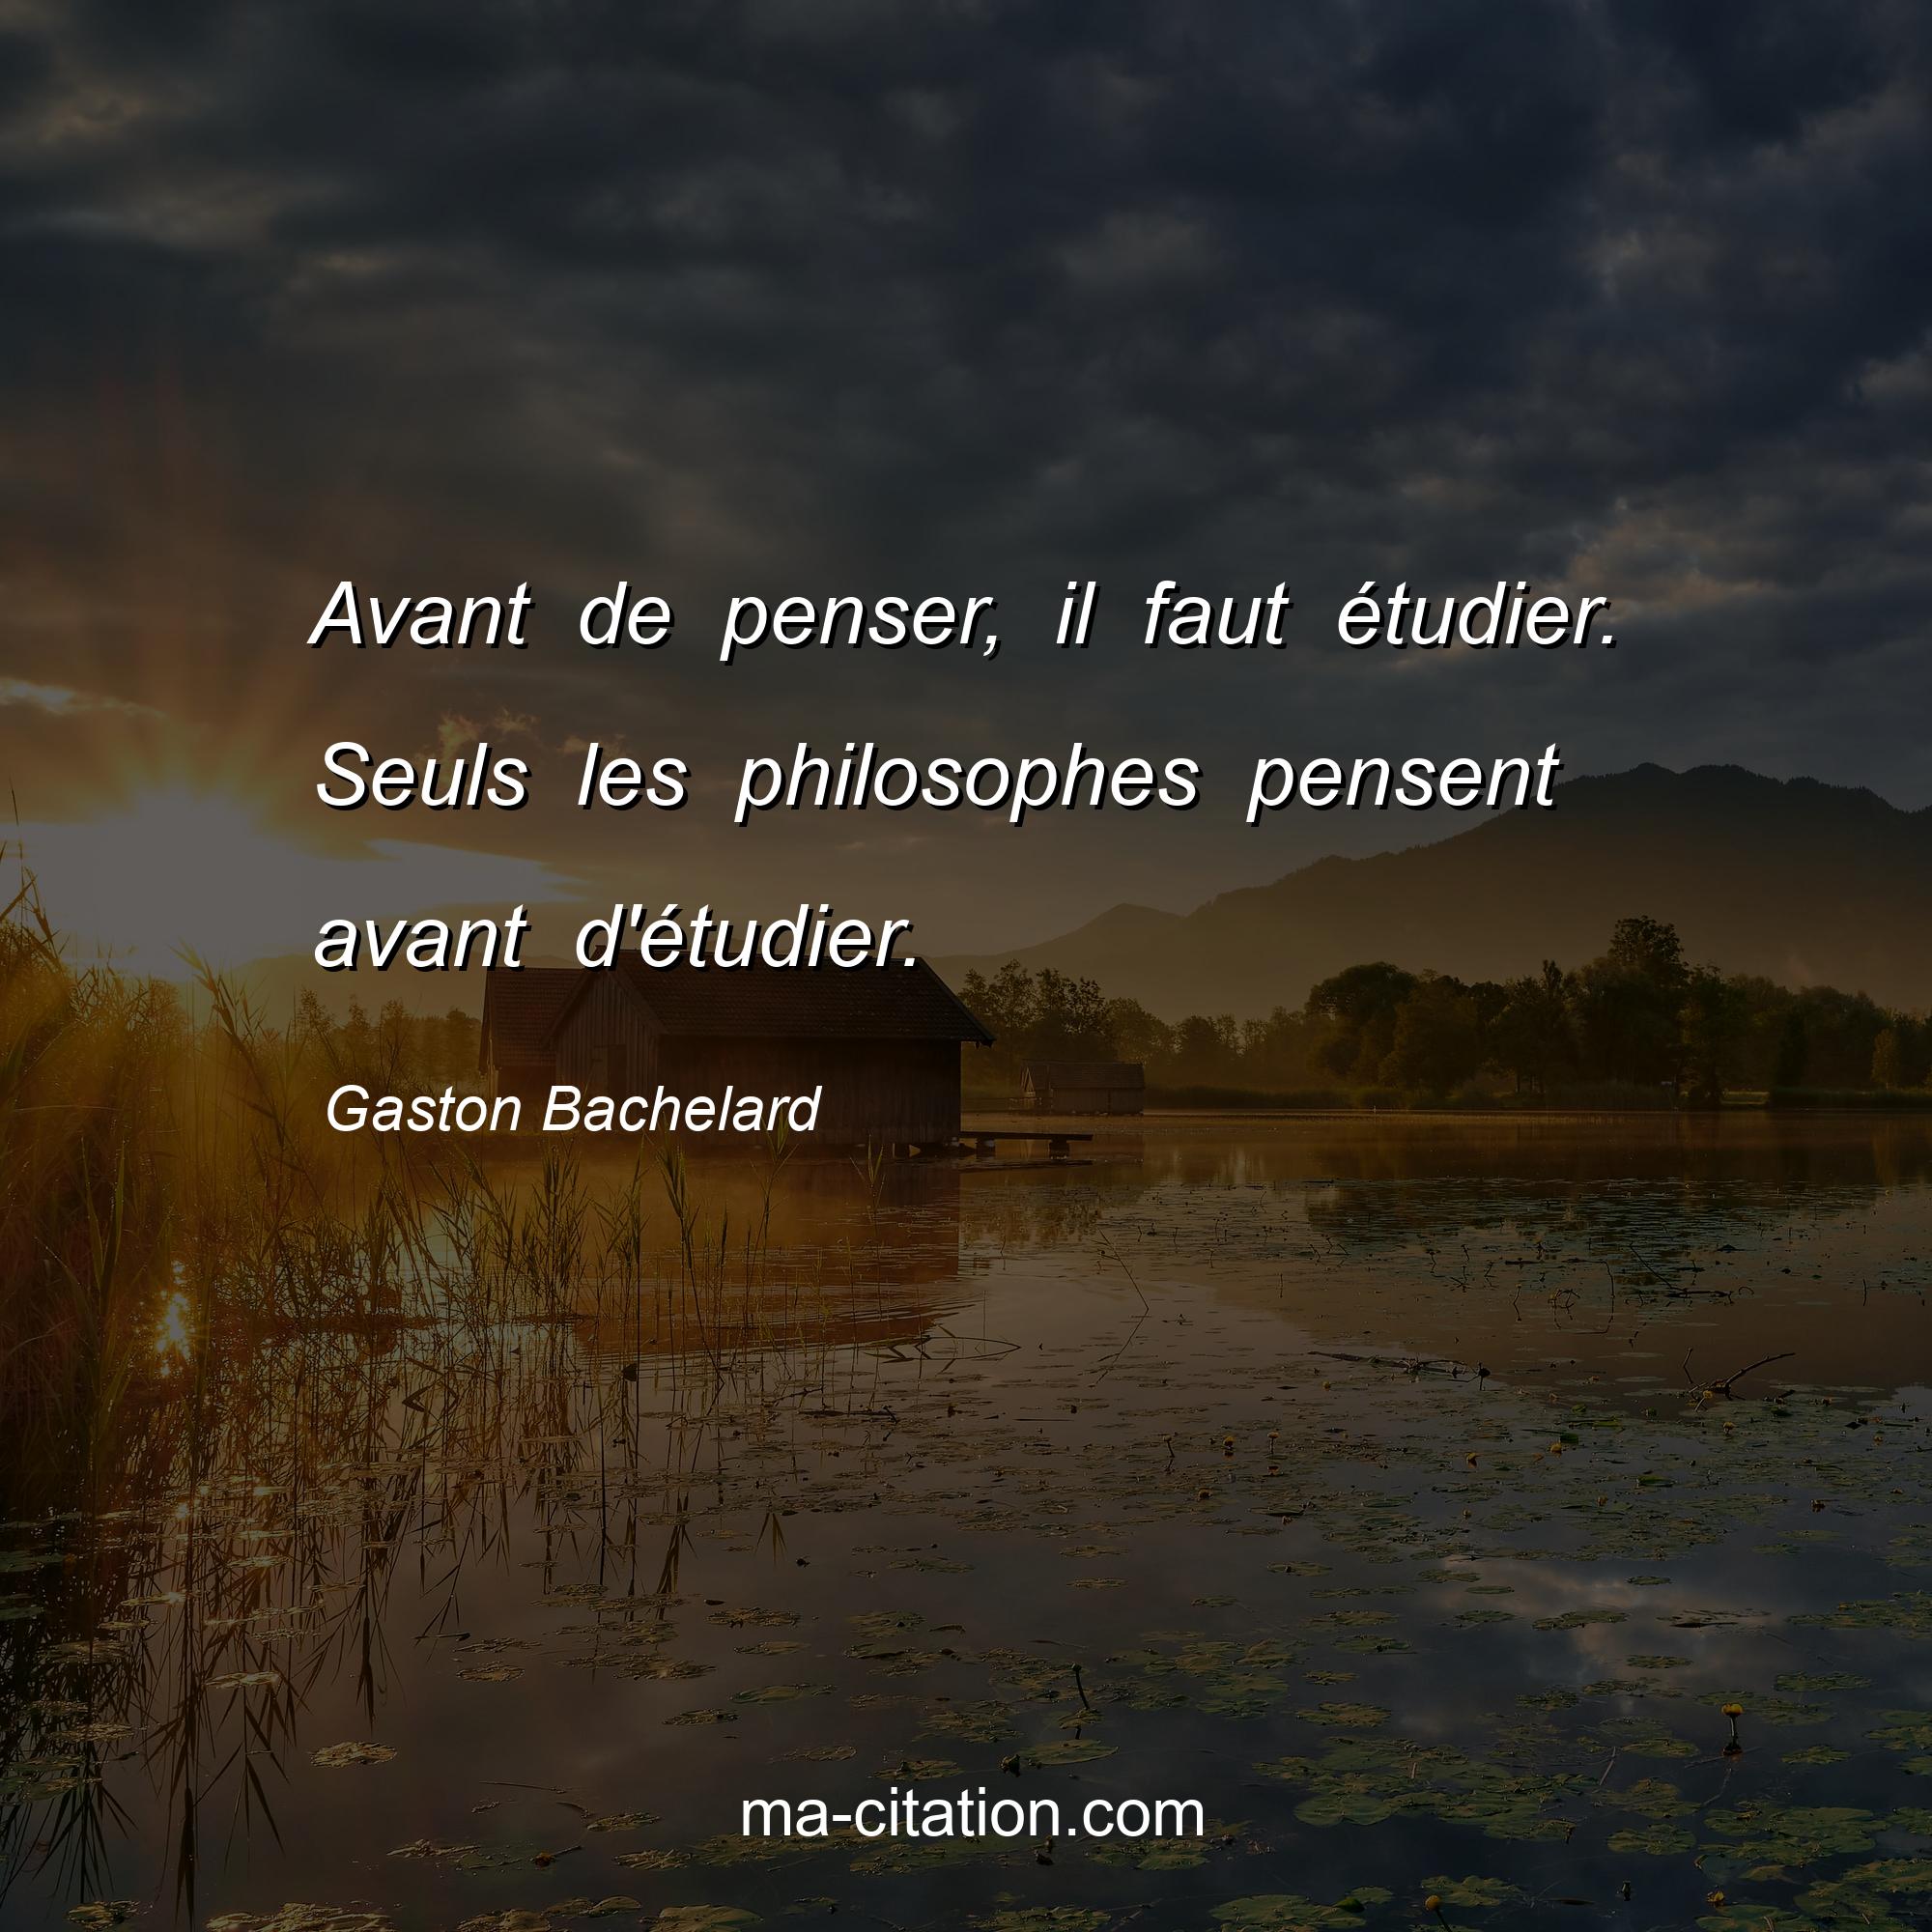 Gaston Bachelard : Avant de penser, il faut étudier. Seuls les philosophes pensent avant d'étudier.